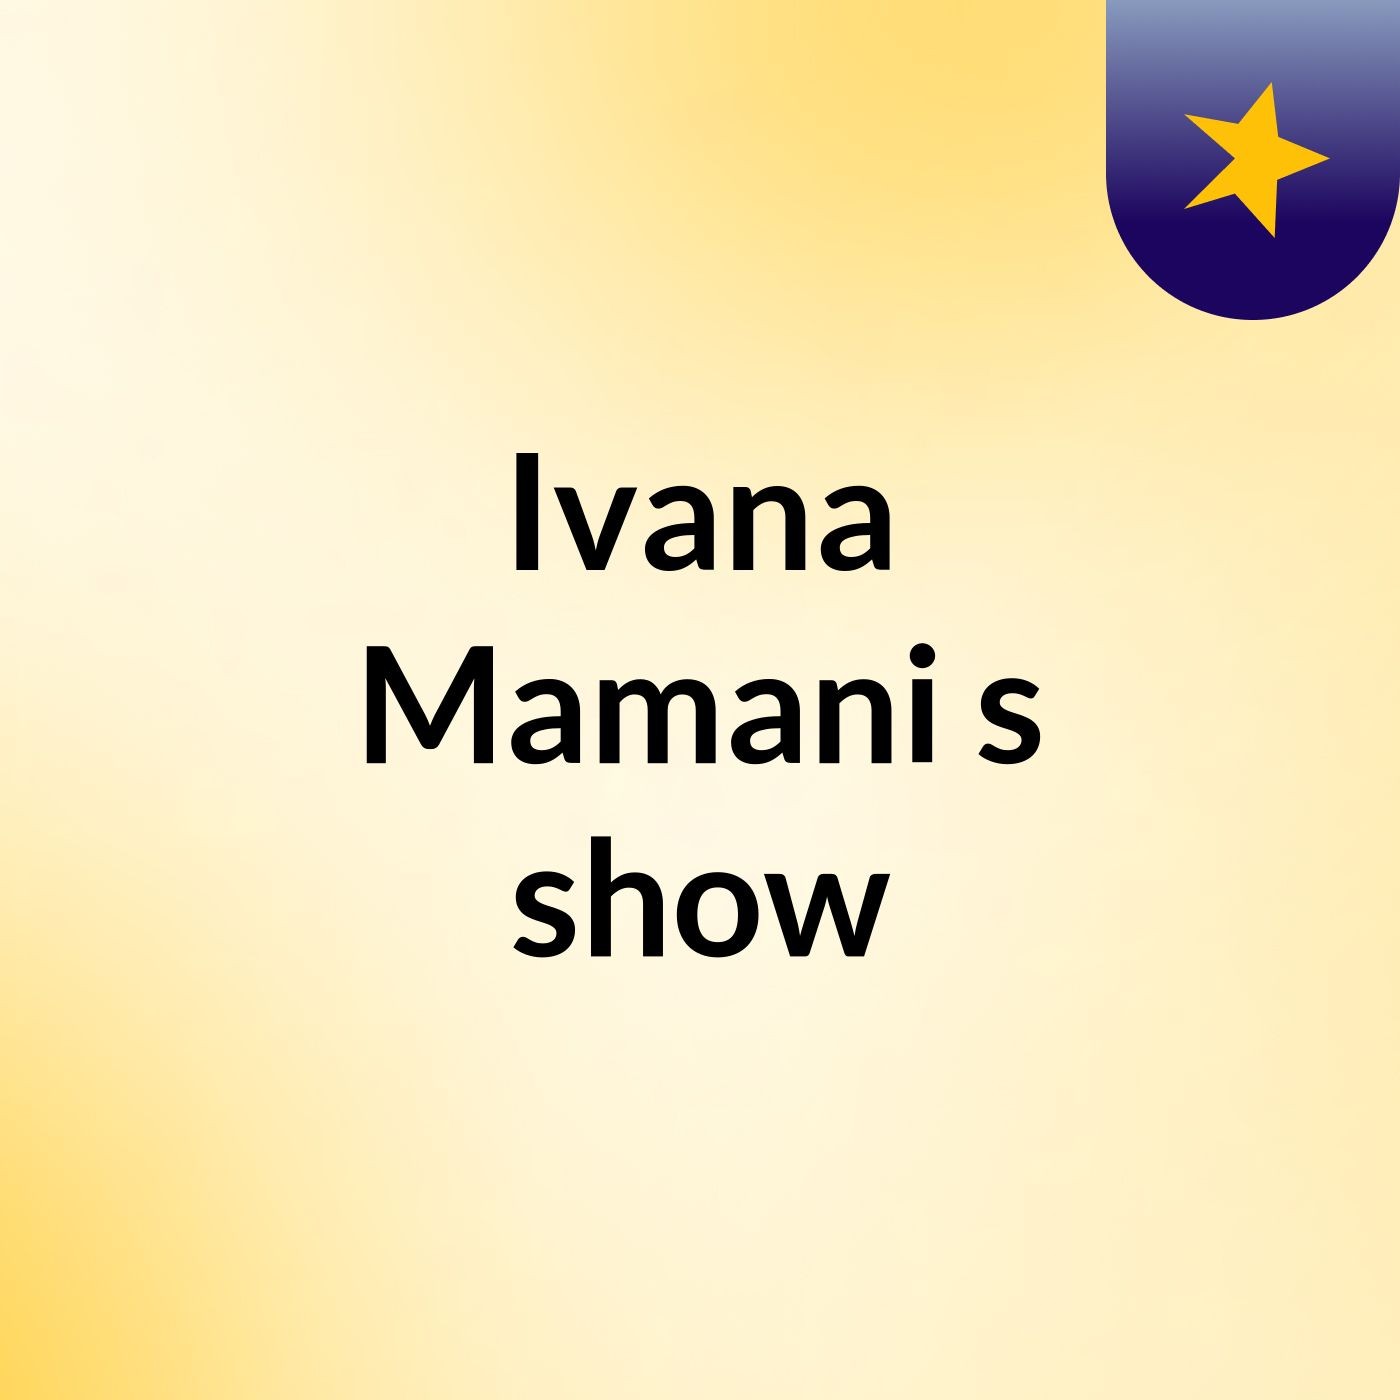 Ivana Mamani's show